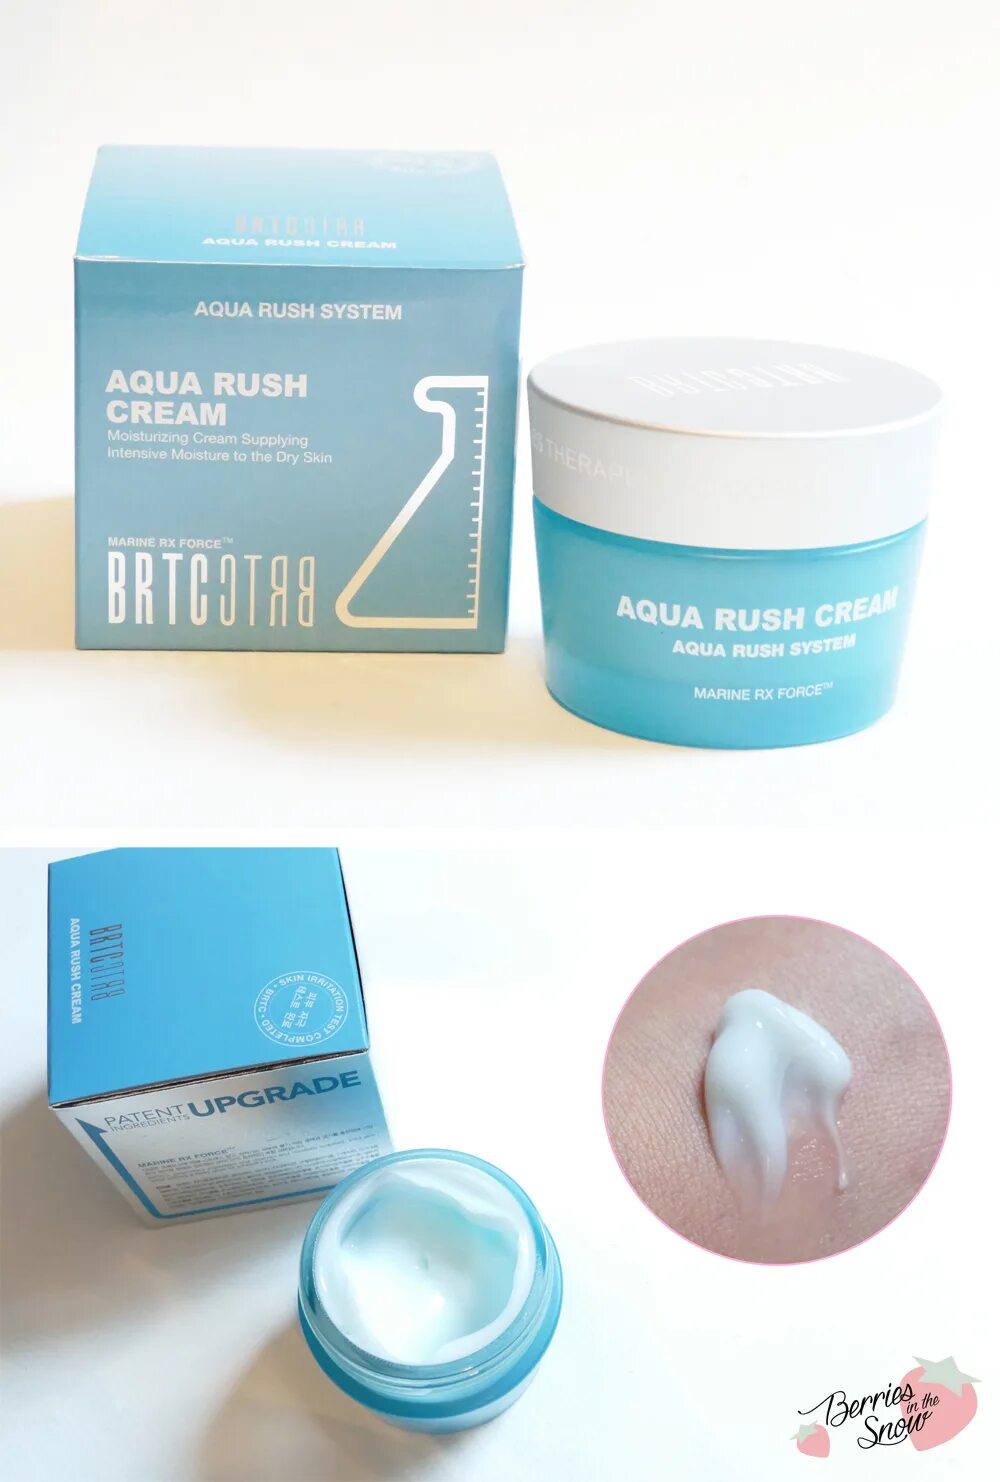 Крем BRTC. Aqua 24 h крем. Крем 4 в 1aqua. Premium Aqua Cream.